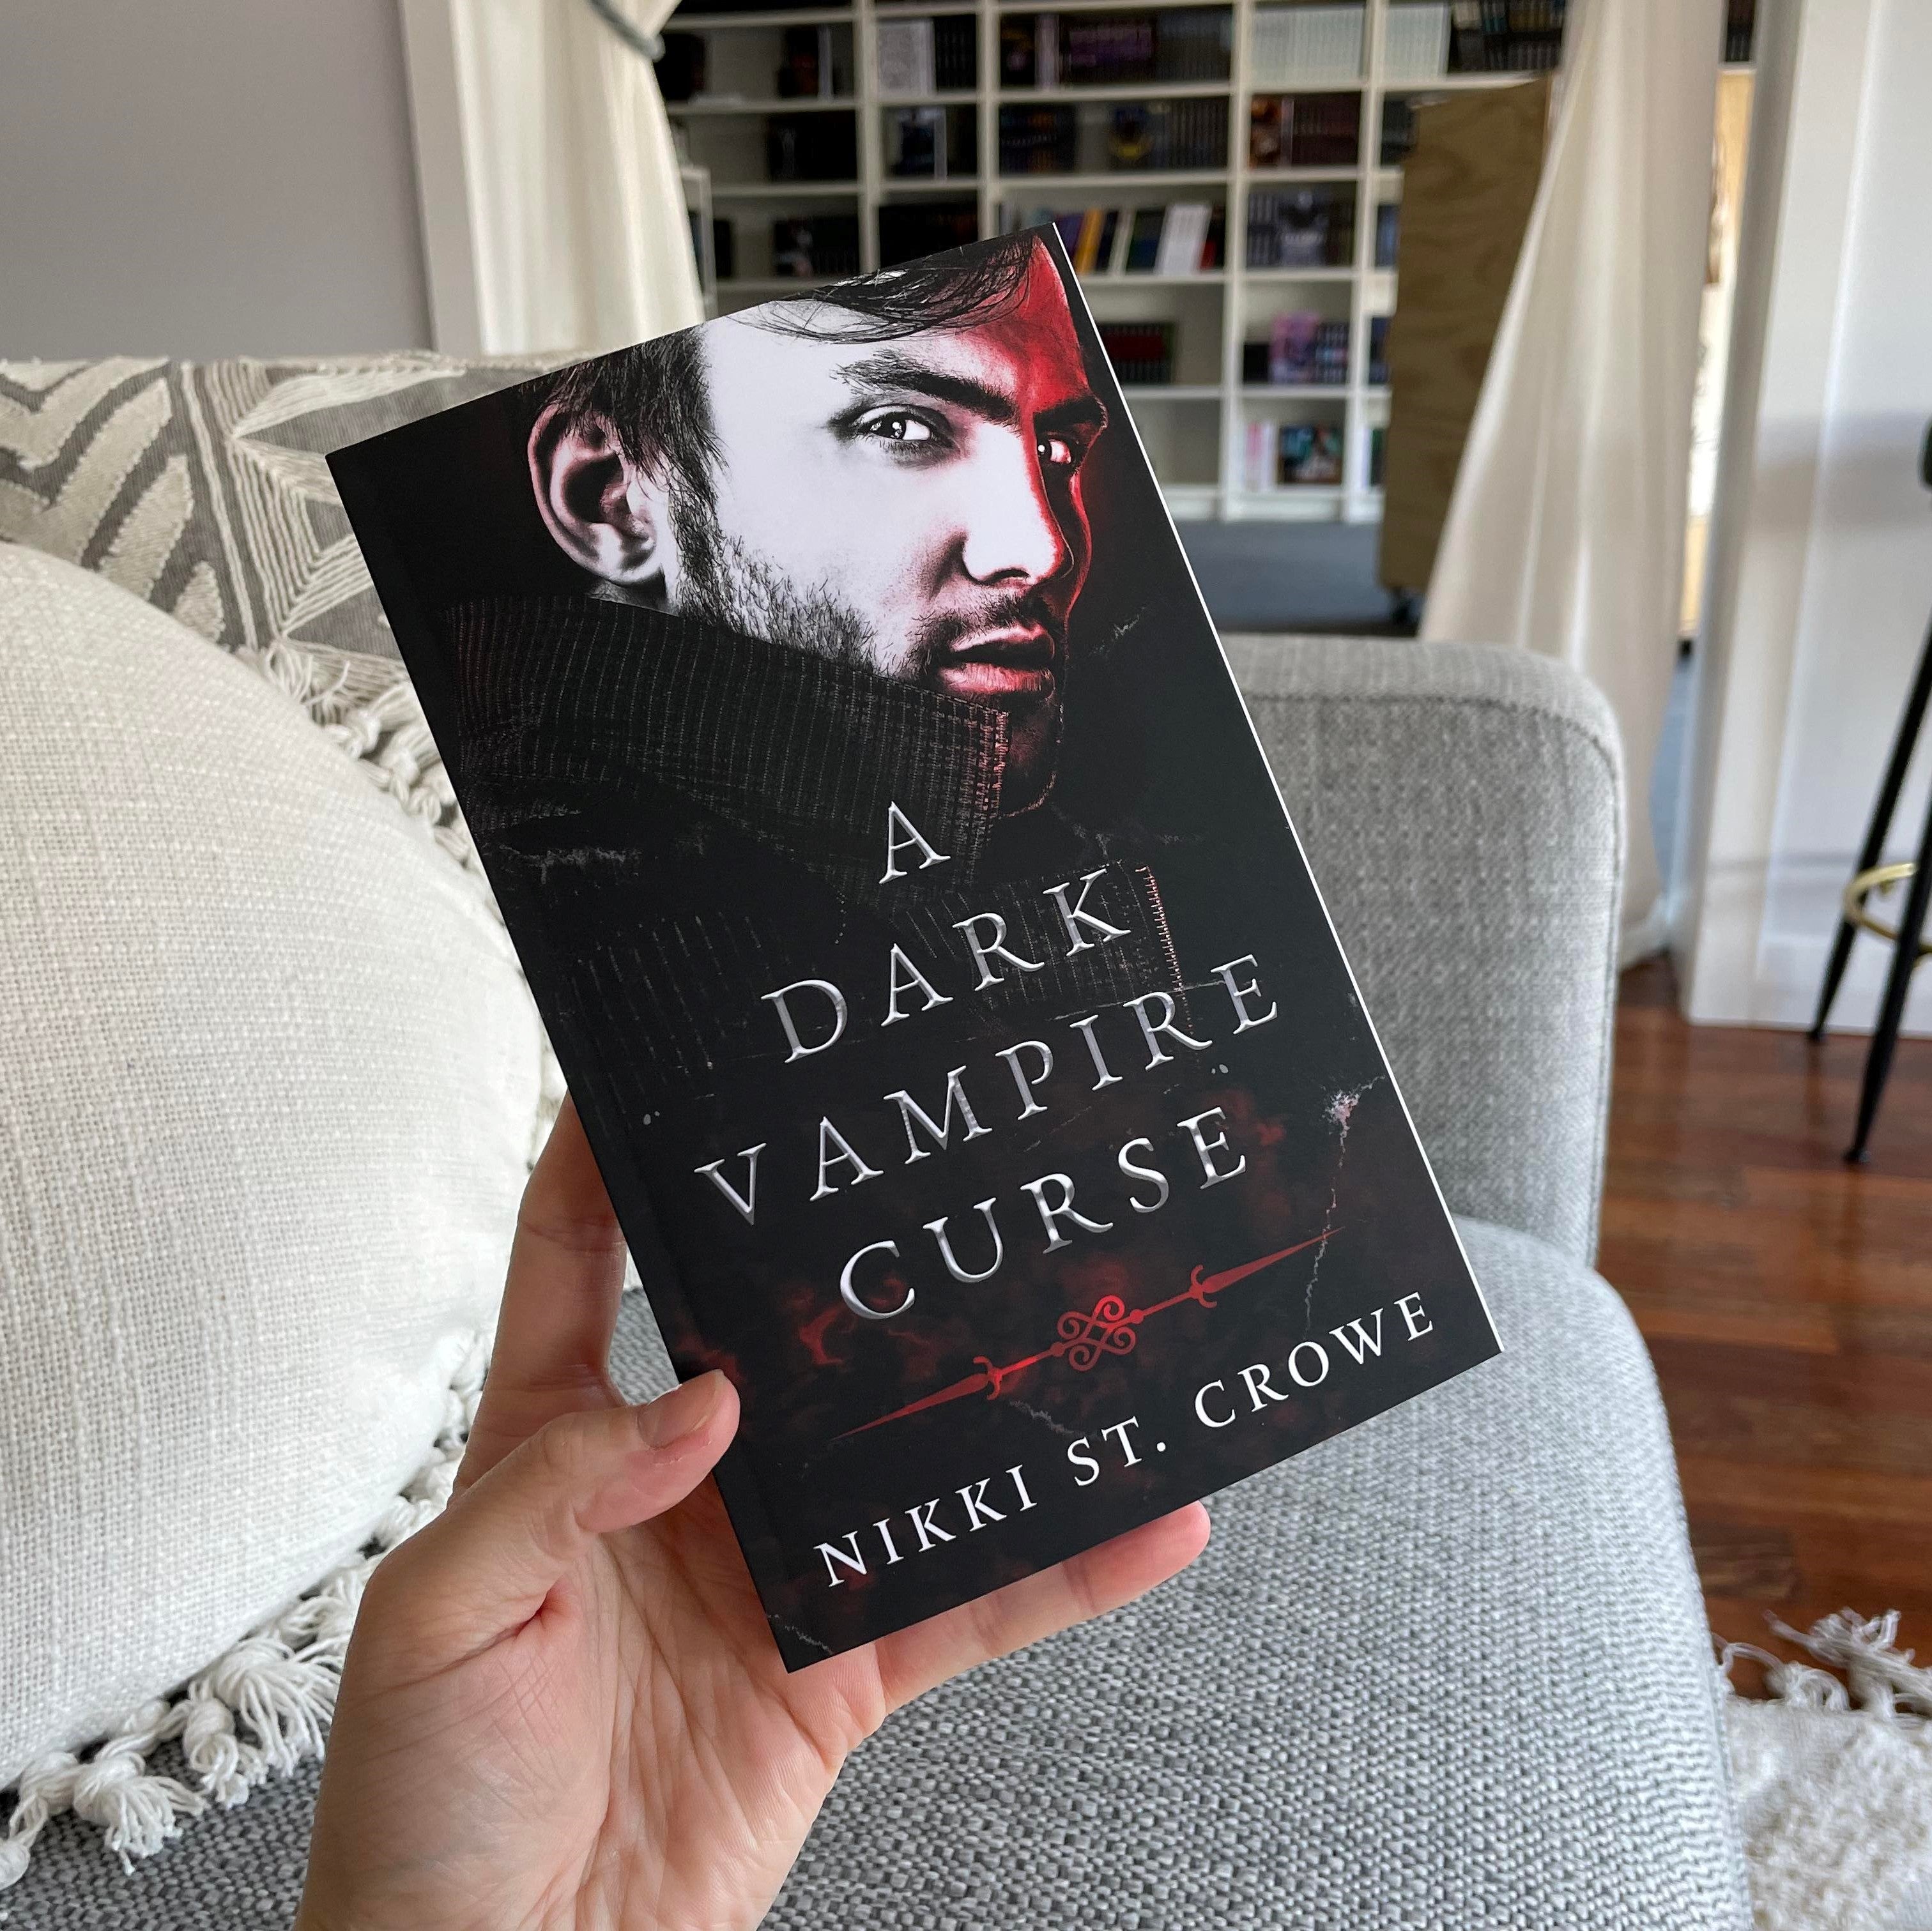 A Dark Vampire Curse by Nikki St Crowe